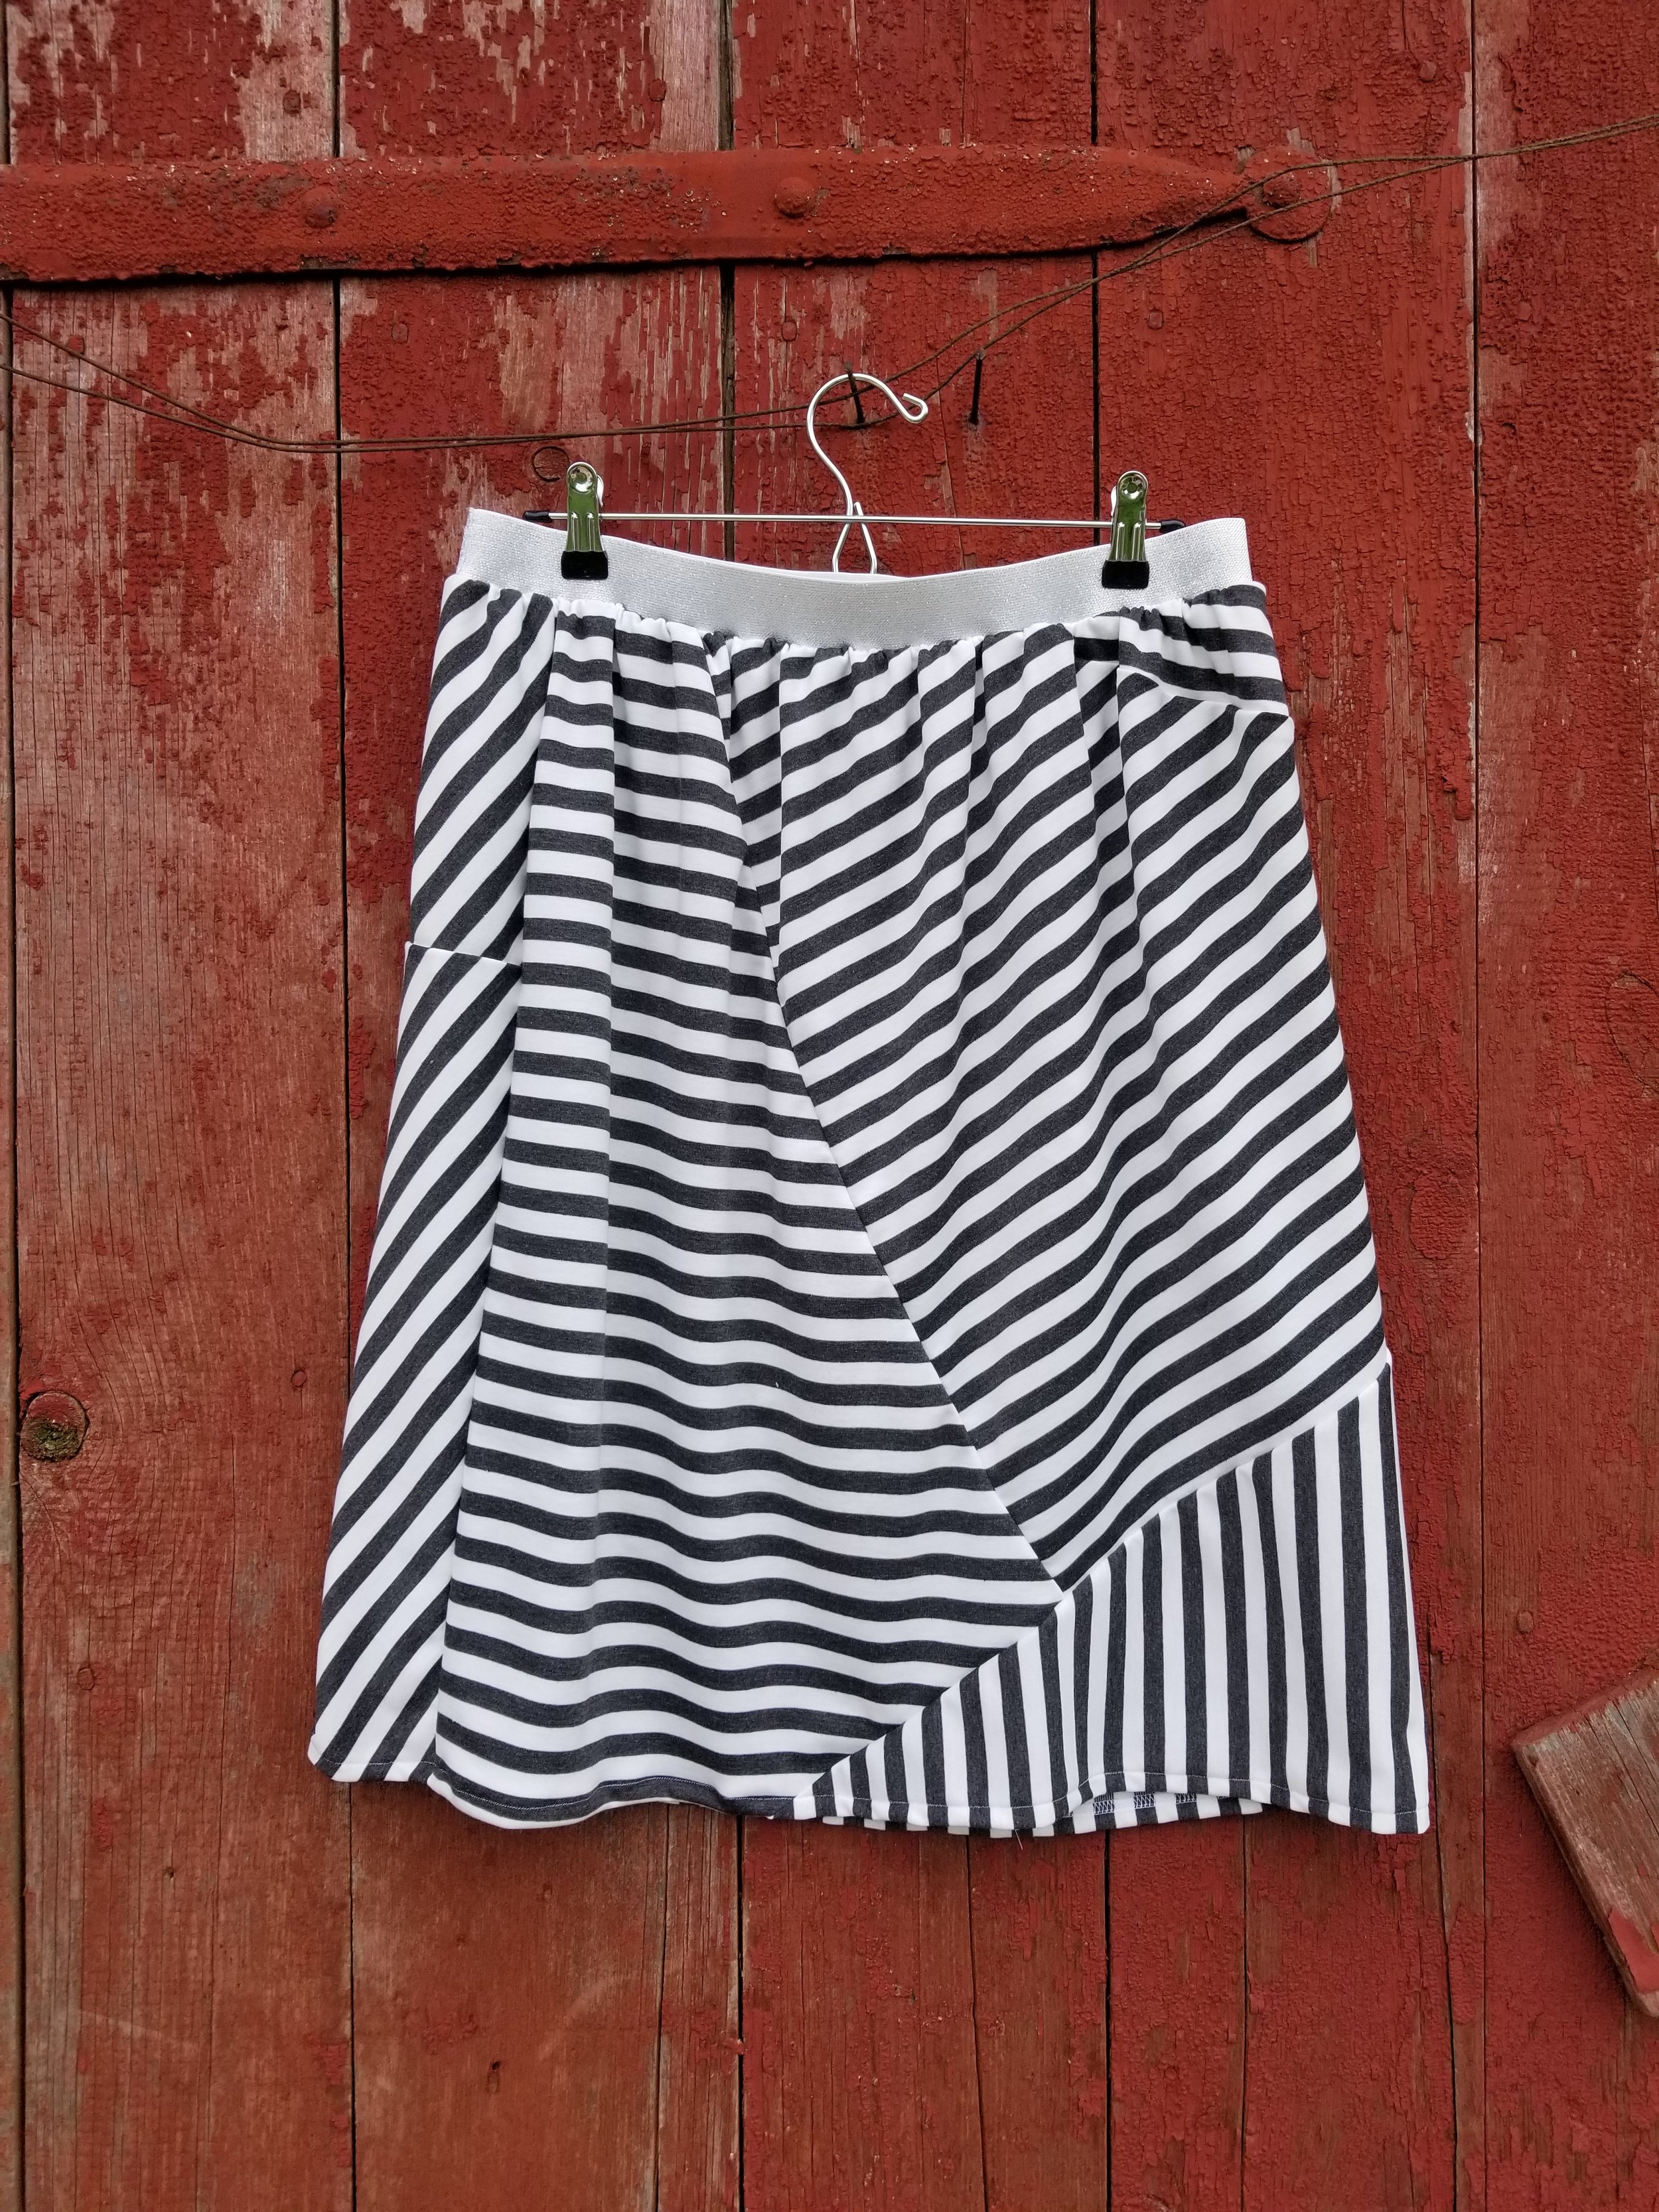 Random Creation - Dark Gray and White Stripe Skirt — Just Skirts by Lori